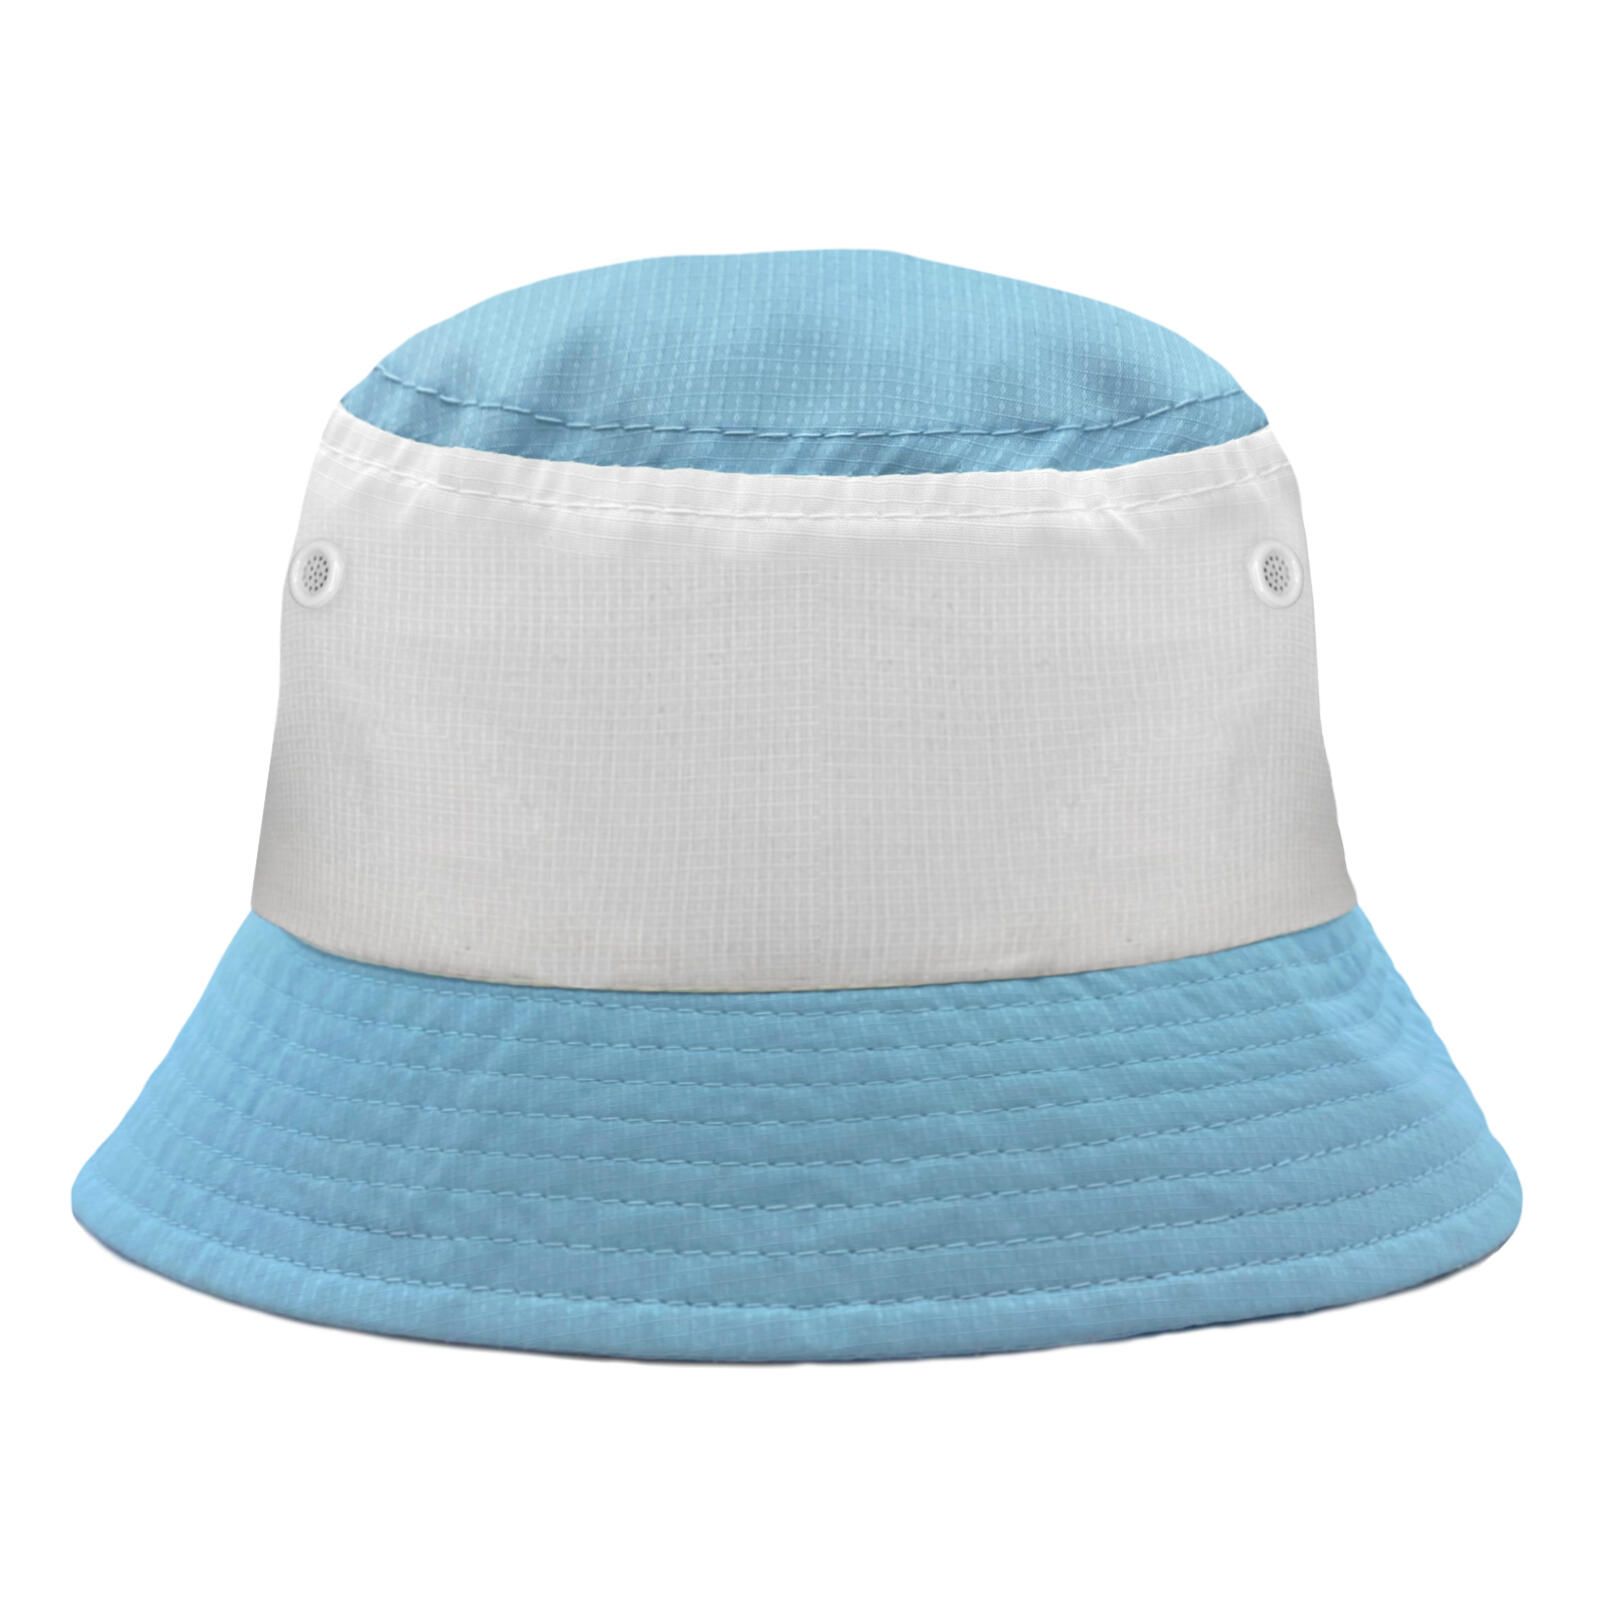 FAN ORIGINALS Fan Originals Bucket Hat Tricolour Sky Blue White City Colours